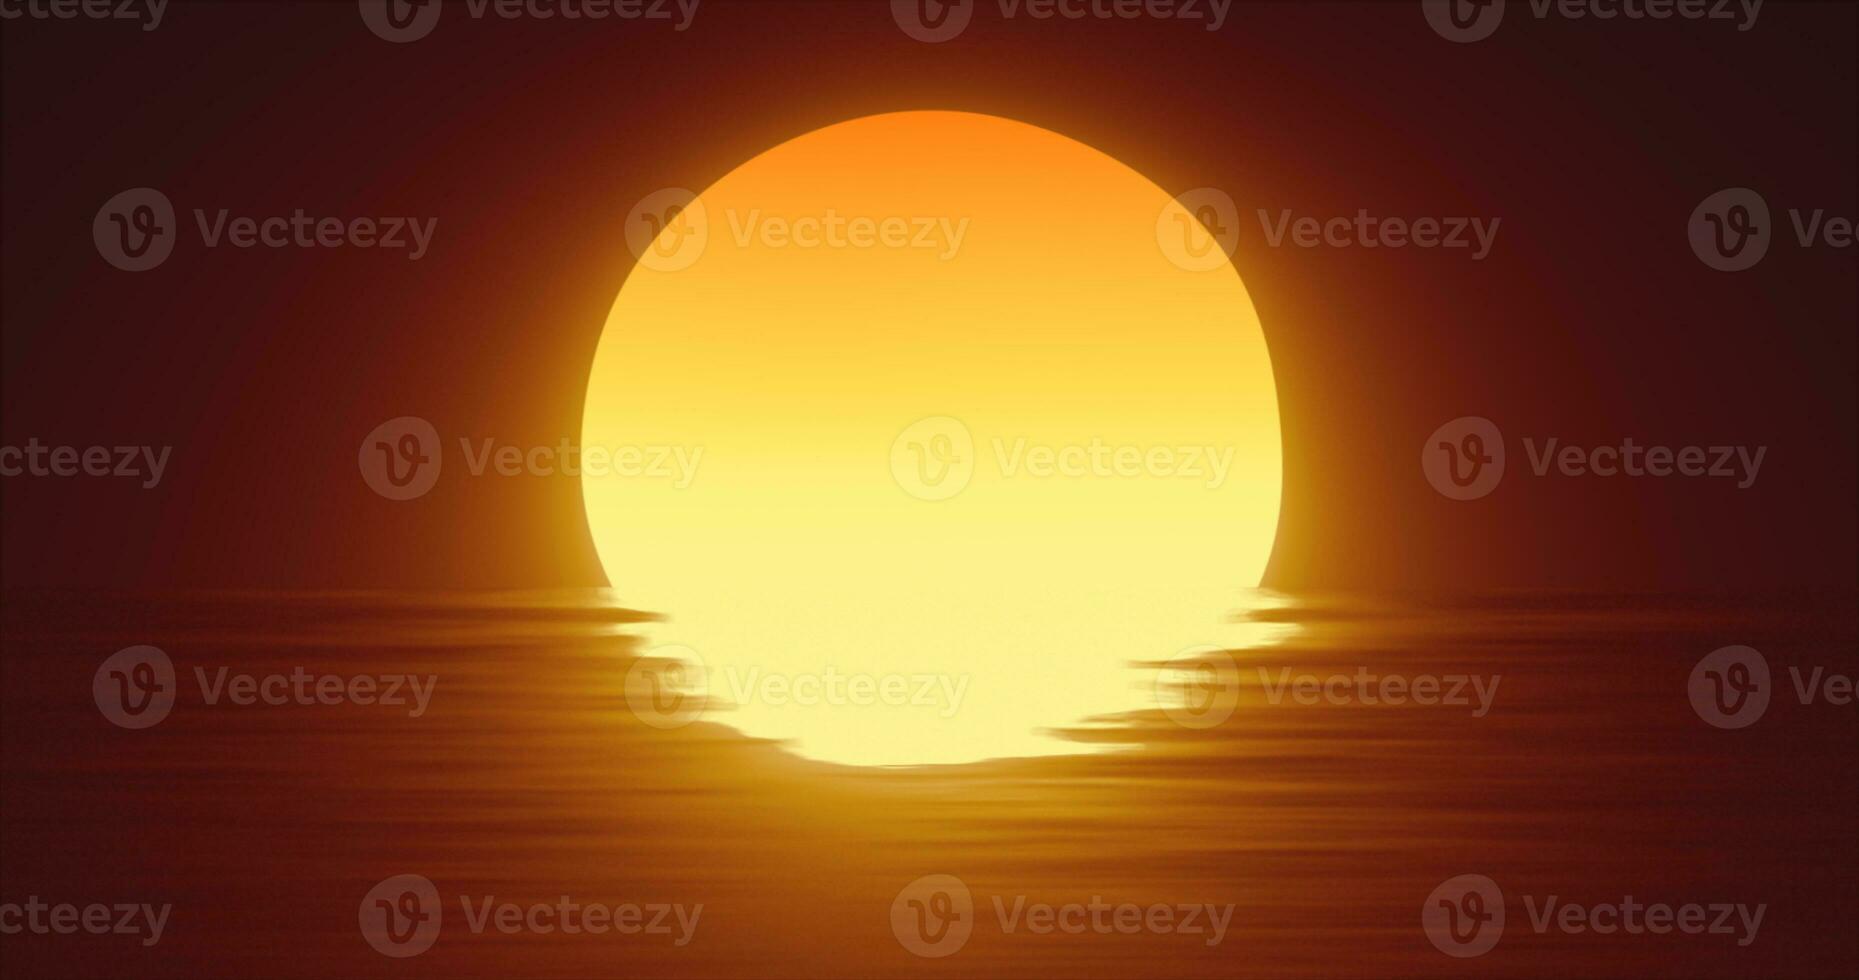 abstract oranje zon over- water en horizon met reflecties achtergrond foto